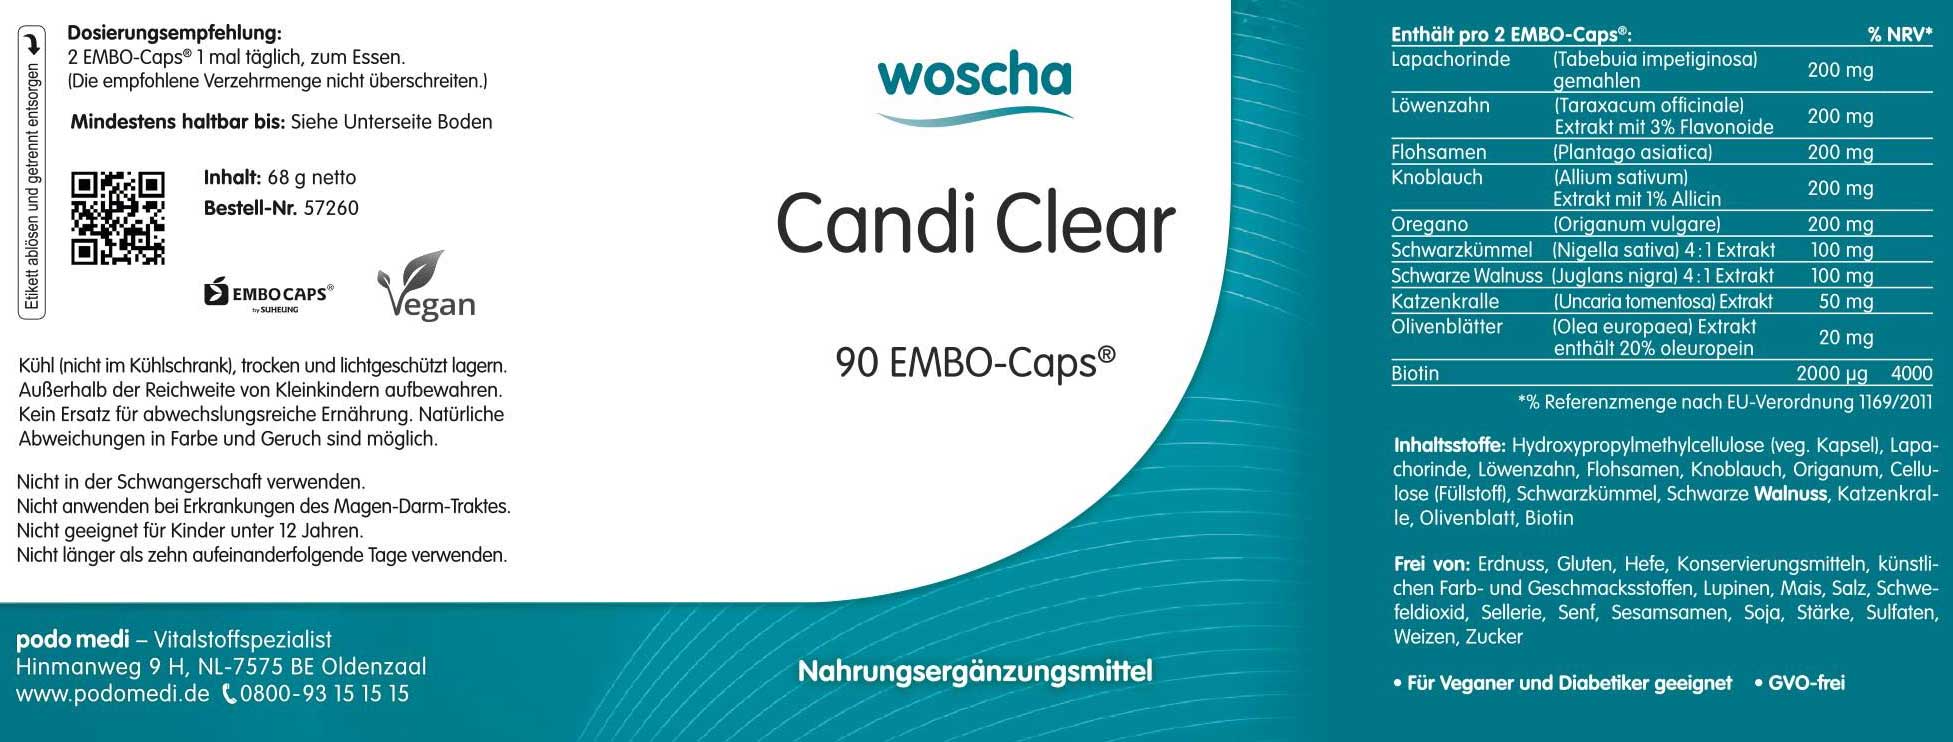 Woscha Candi Clear von podo medi beinhaltet 90 Kapseln Etikett